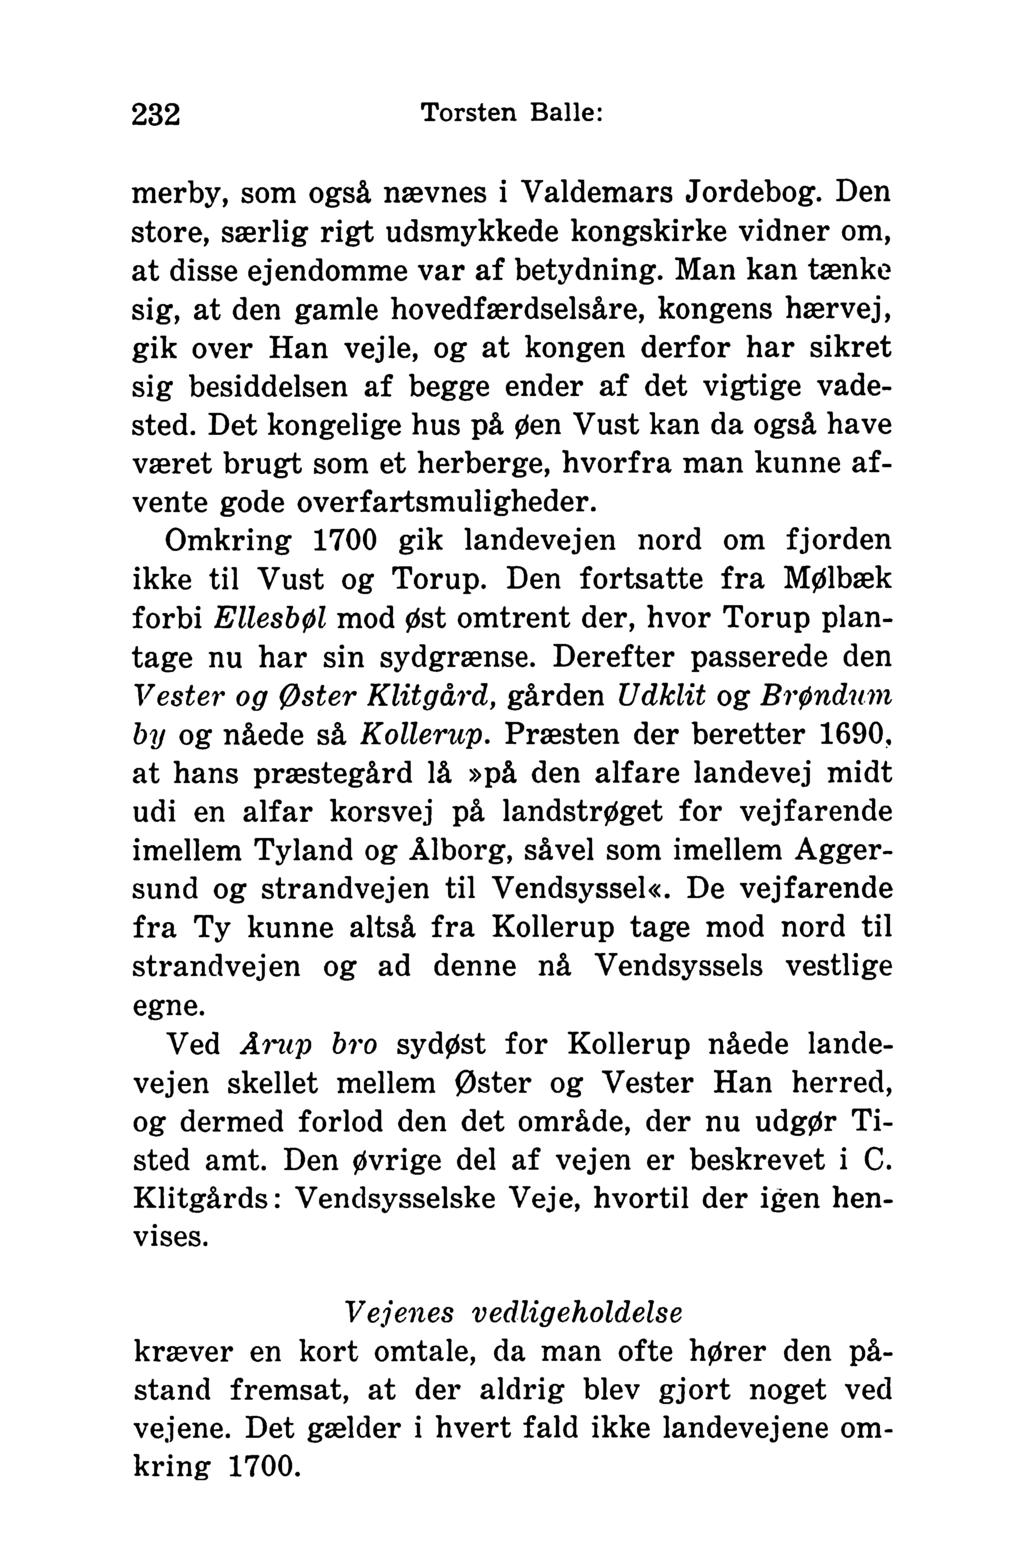 232 Torsten Balle: merby, som også nævnes i Valdemars Jor debog. Den store, særlig rigt udsmykkede kongskirke vidner om, at disse ejendomme var af betydning.